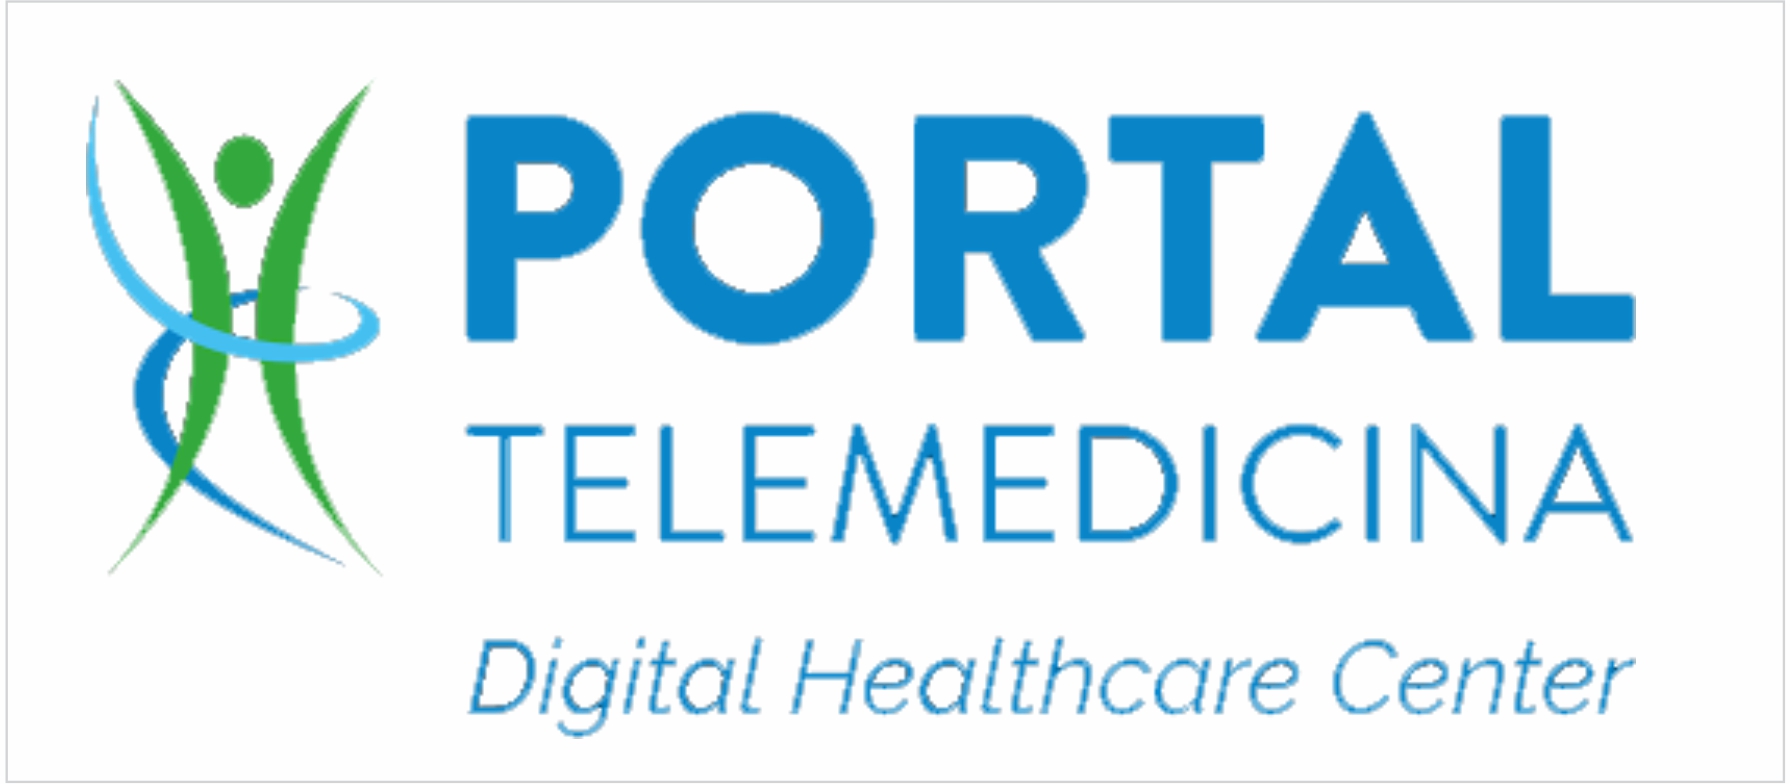 Portal Tele Medicina